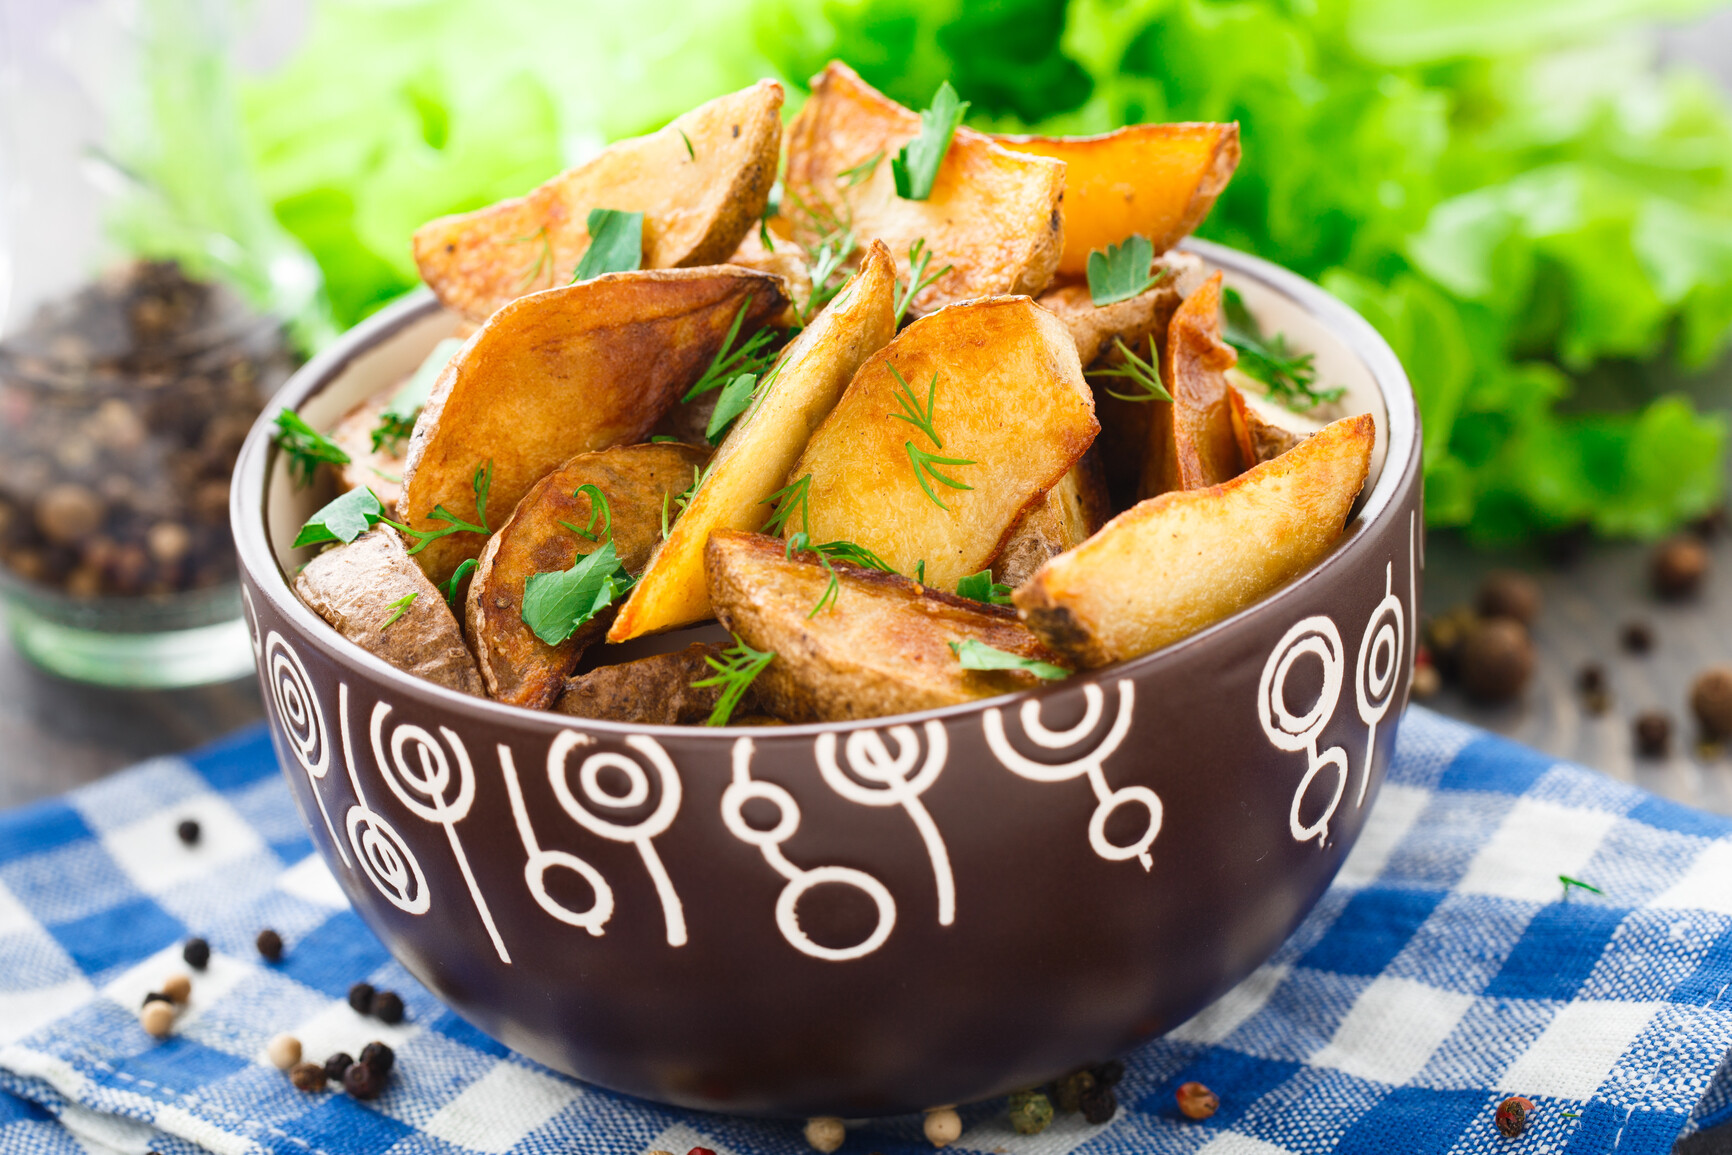 Картошка по-селянски - разные рецепты с фото - Рецепты, продукты, еда | Сегодня